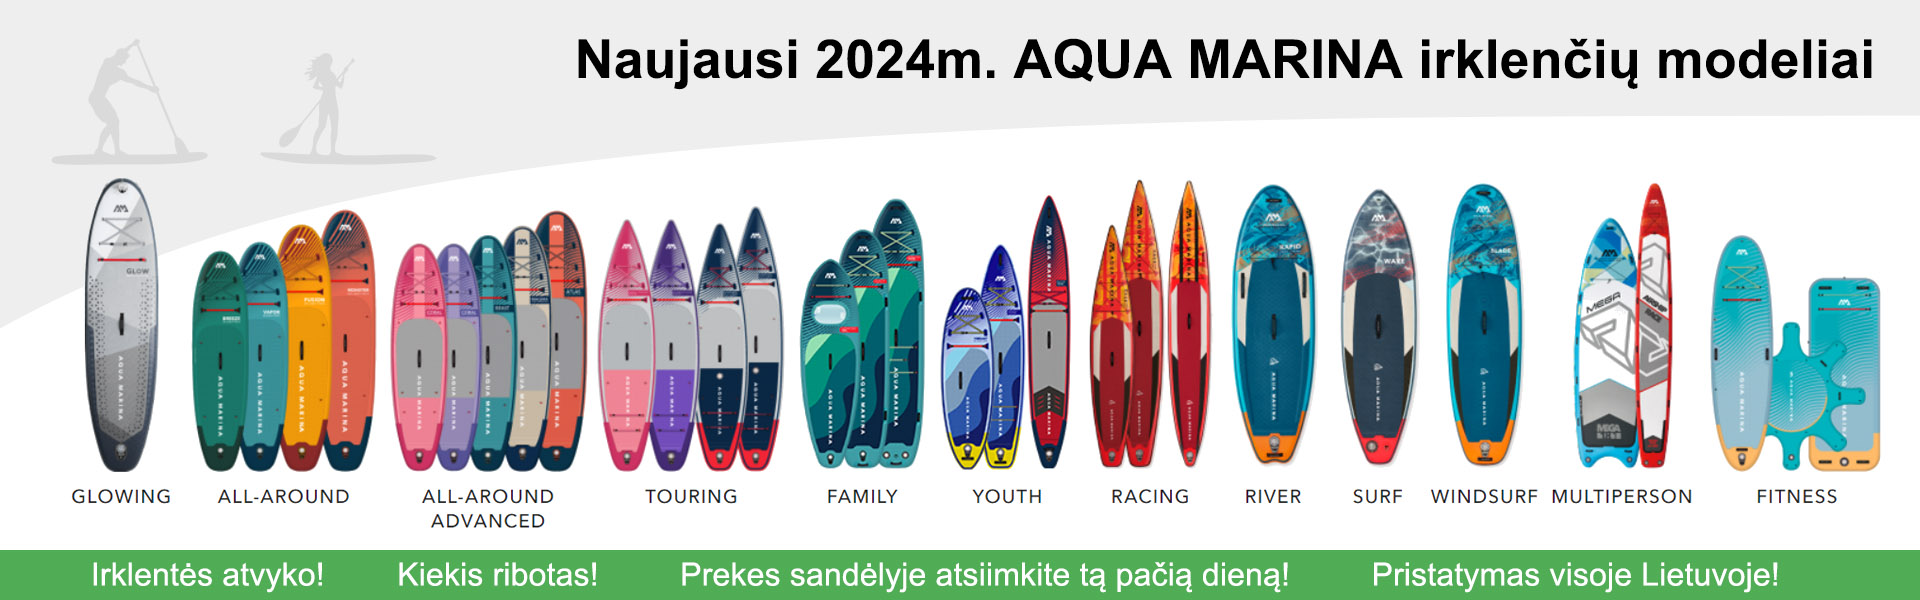 2024 metų Aqua Marina irklenčių kolekcija